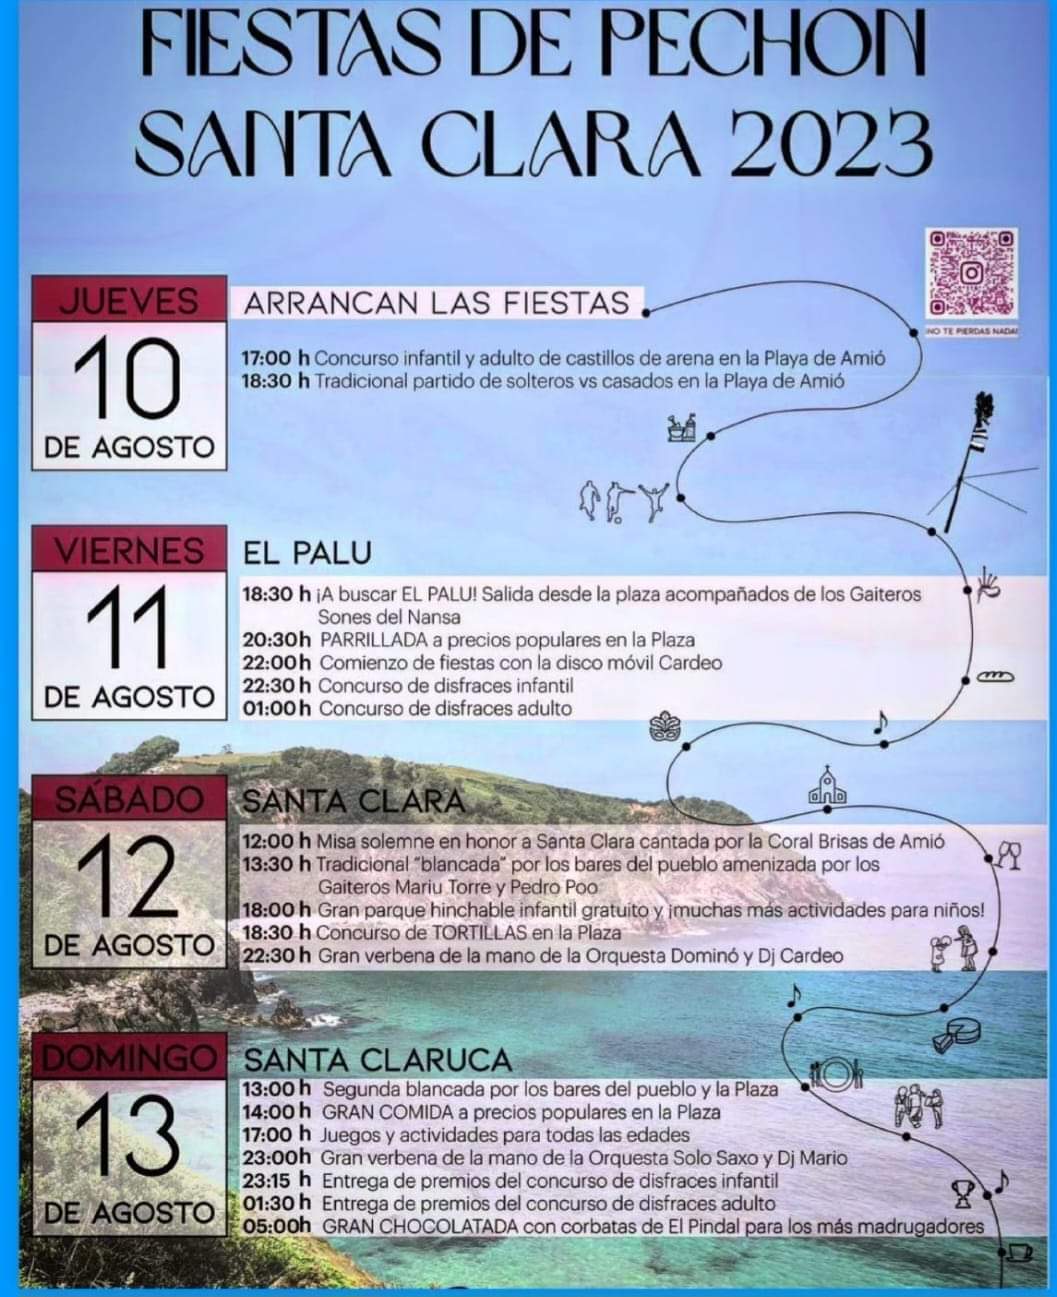 Fiestas de Pechón Santa Clara 2023